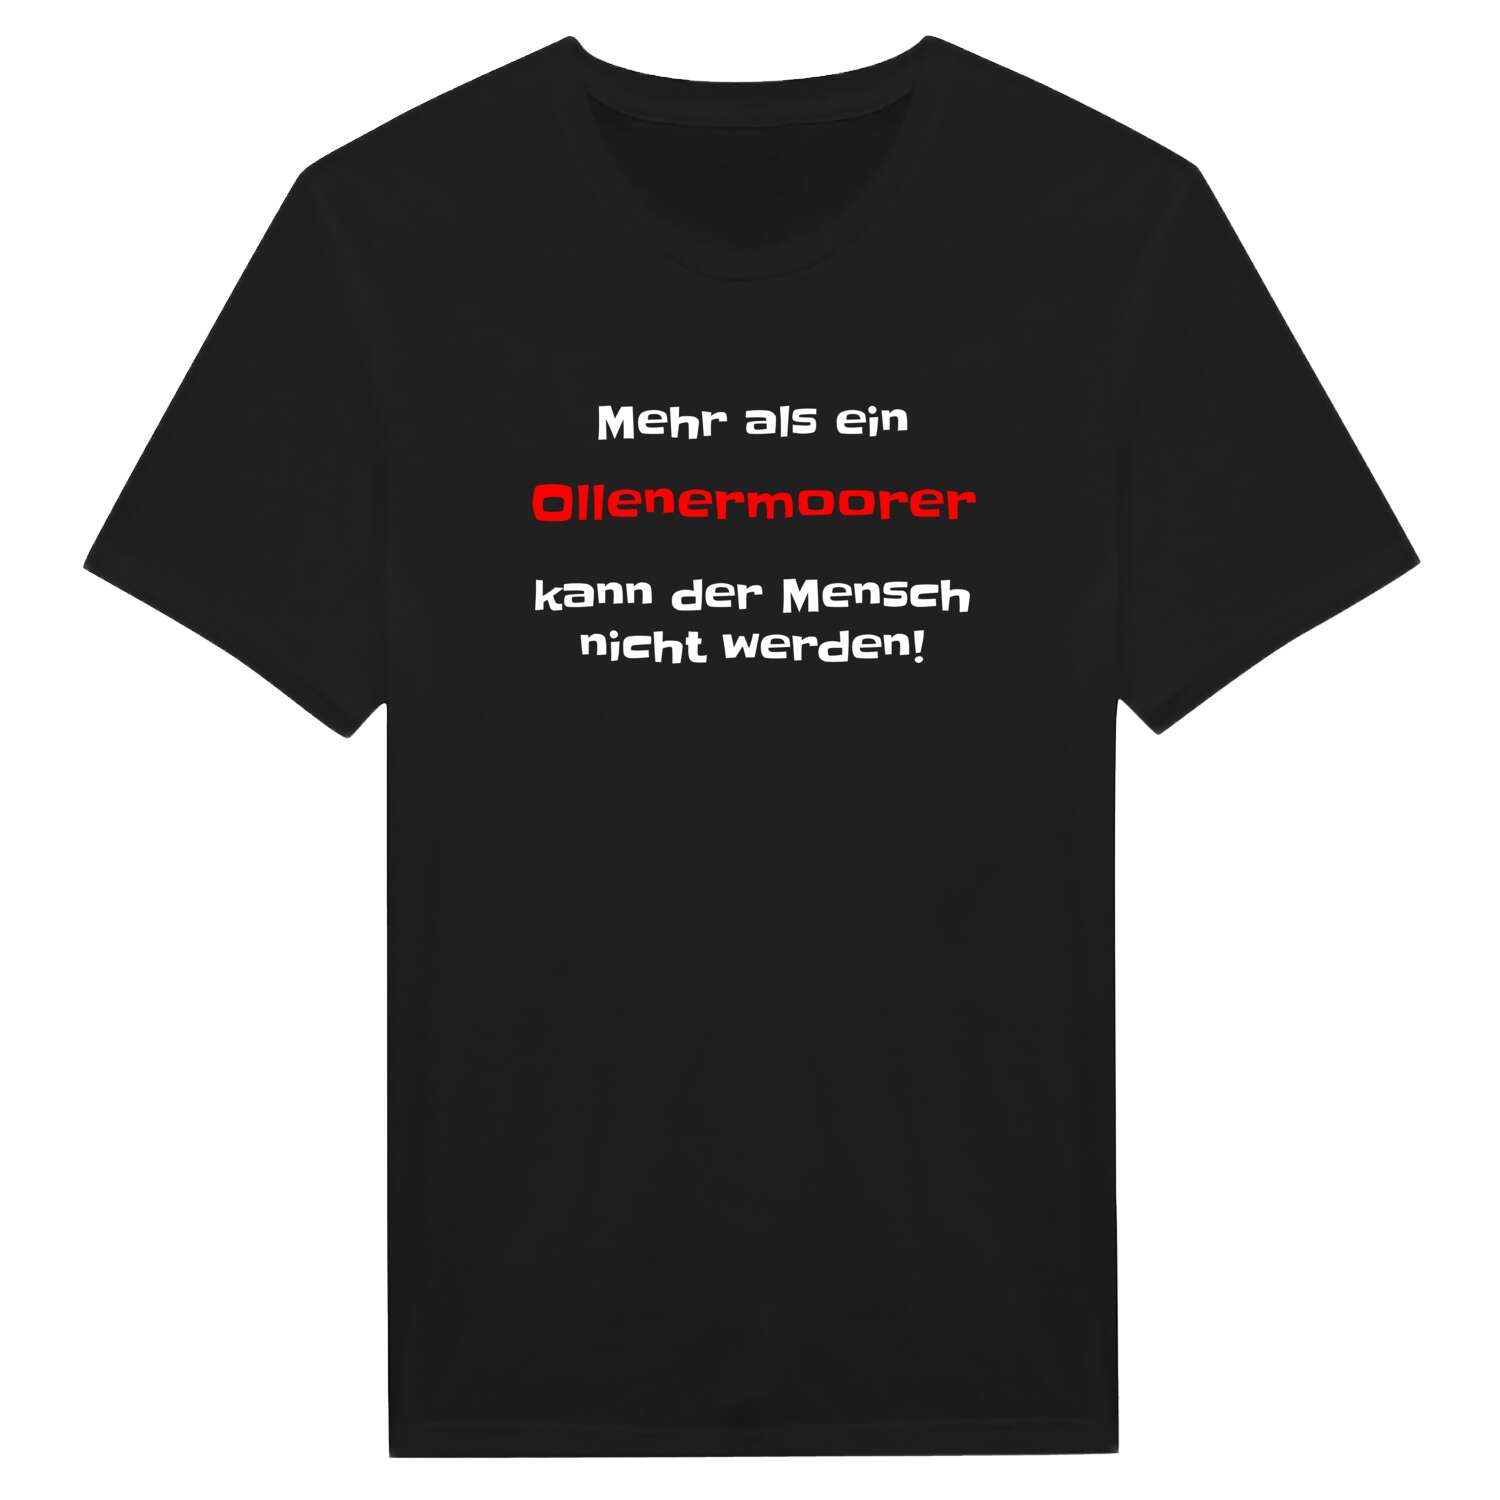 Ollenermoor T-Shirt »Mehr als ein«